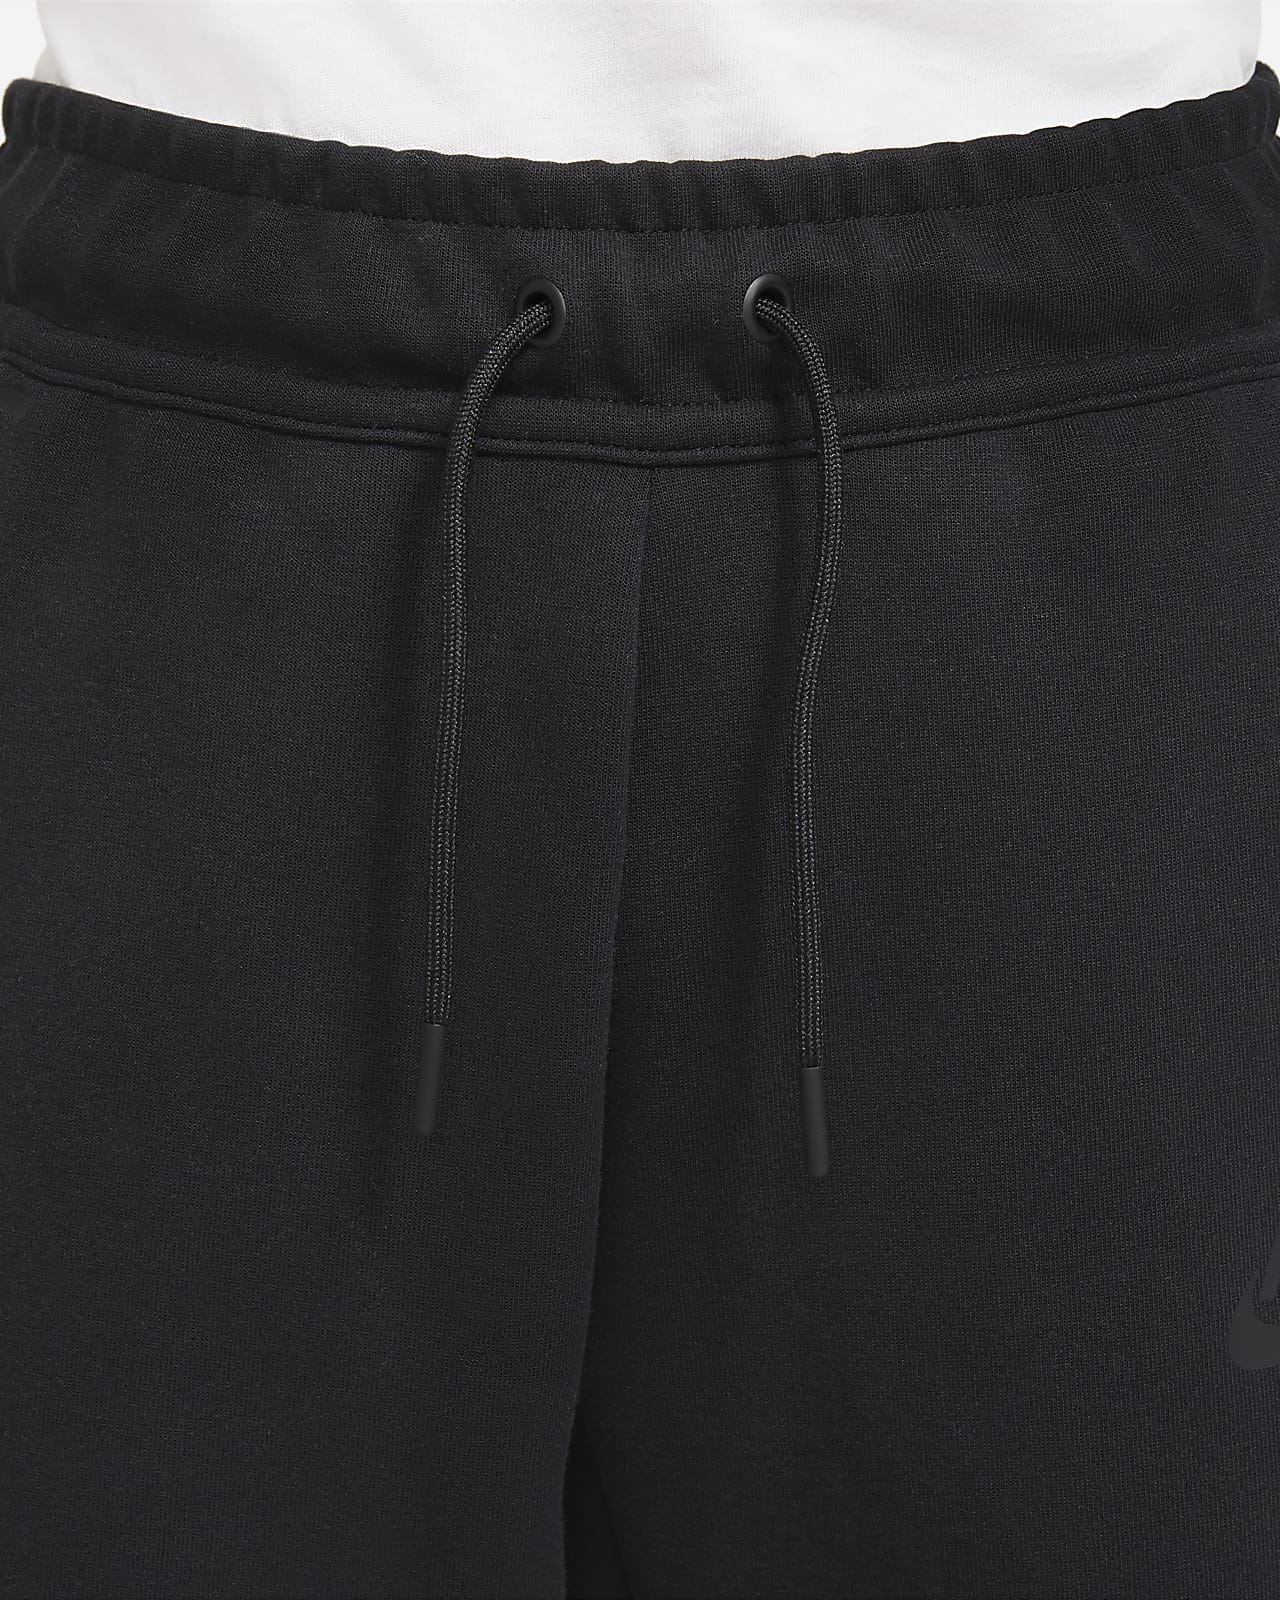 Nike Sportswear Tech Fleece Big Kids (Boys') Pants.